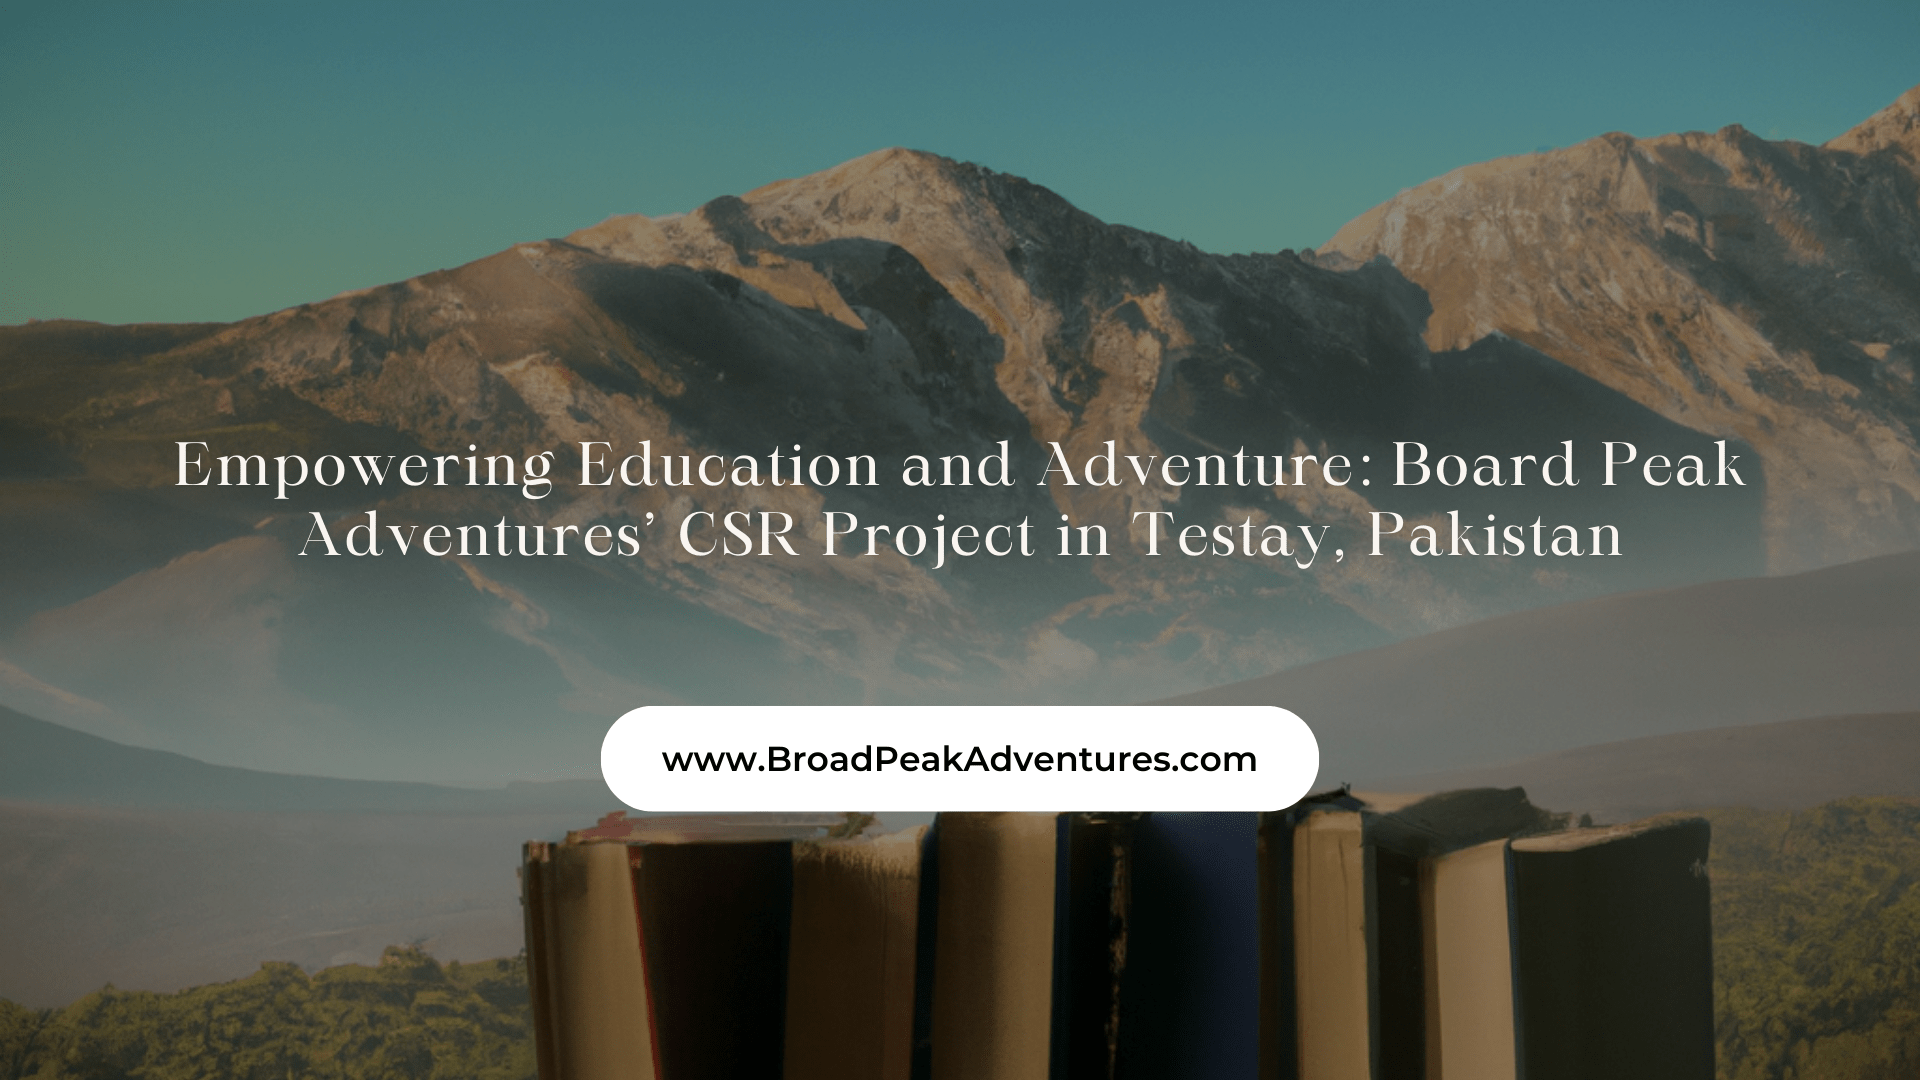 Board Peak Adventures’ CSR Project in Testay, Pakistan